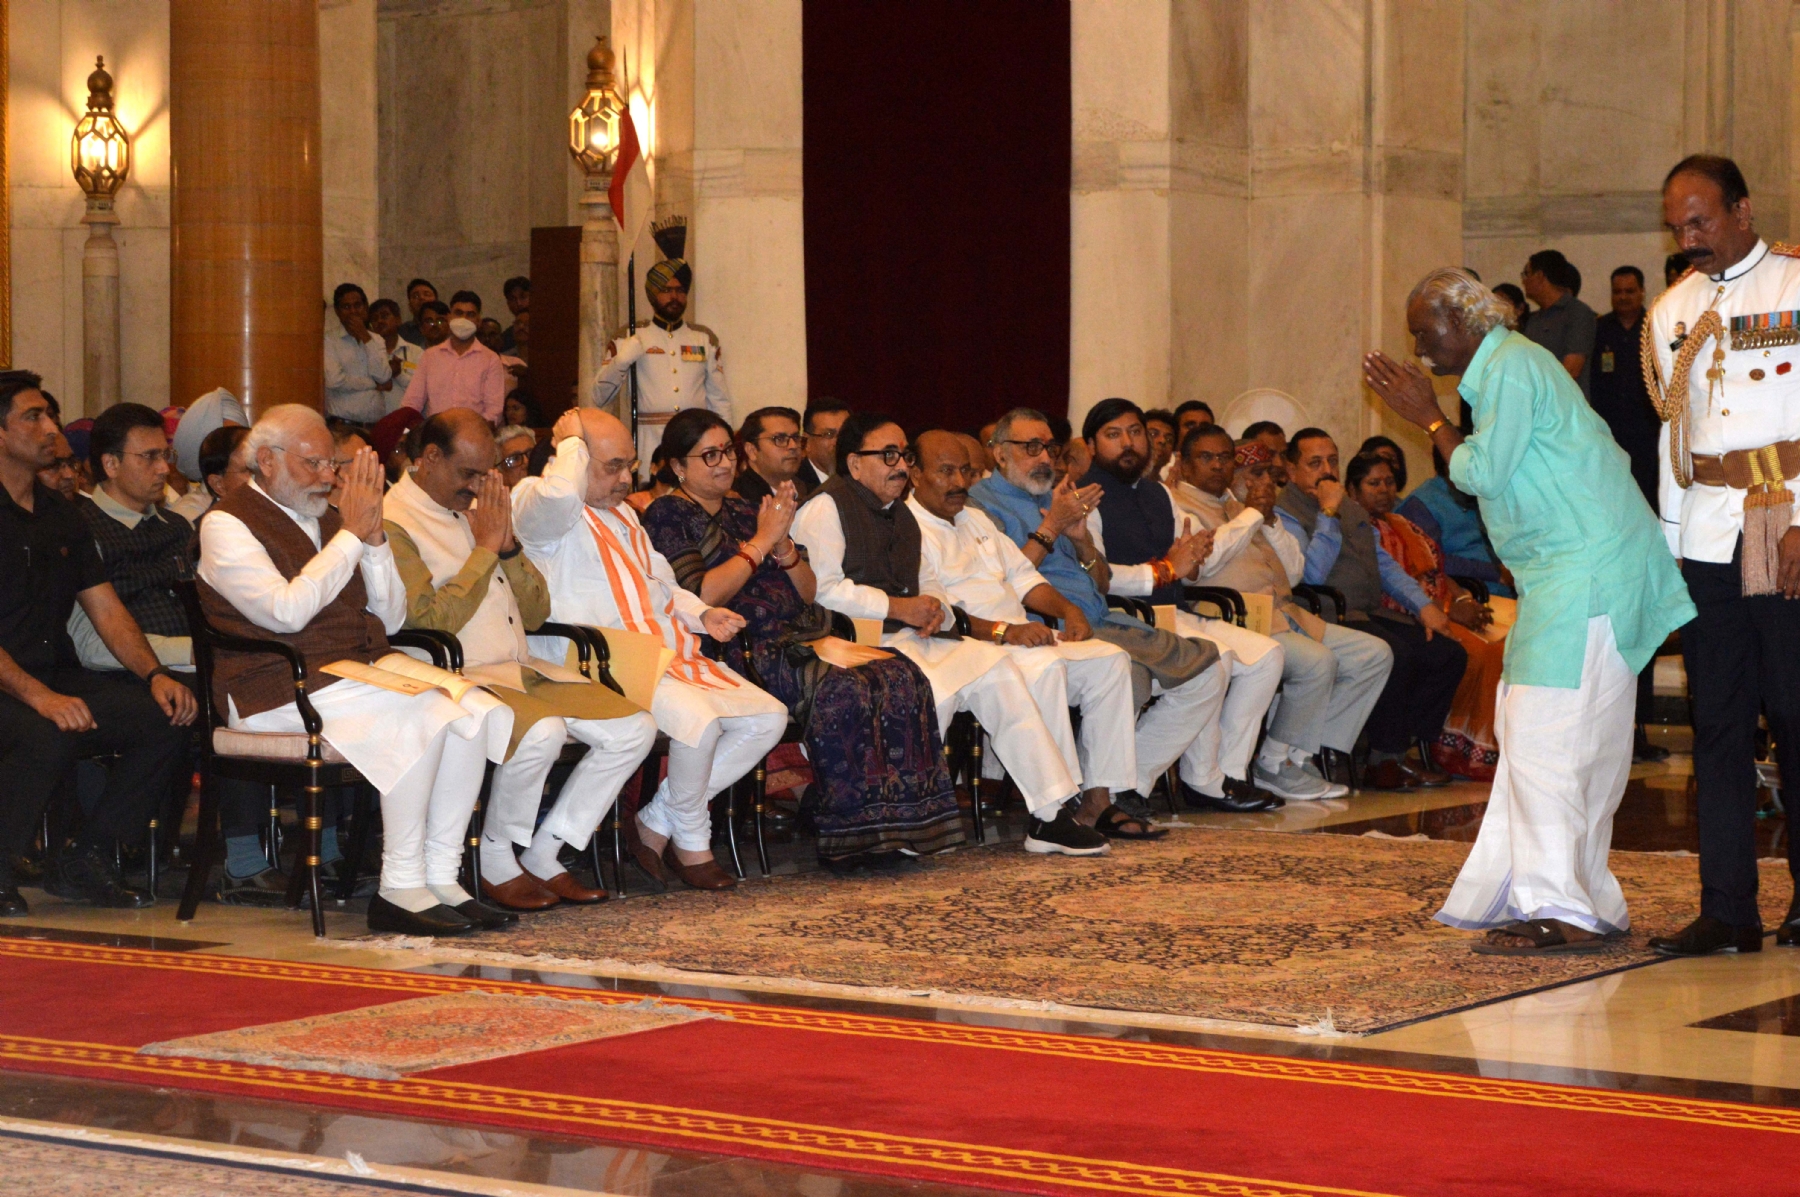 नई दिल्ली में बुधवार 22 मार्च को राष्ट्रपति द्रौपदी मुर्मू, उपराष्ट्रपति जगदीप धनखड़ और प्रधानमंत्री नरेंद्र मोदी, राष्ट्रपति भवन में पद्म पुरस्कार विजेताओं के साथ। हिन्दुस्थान समाचार/ फोटो गणेश बिष्ट